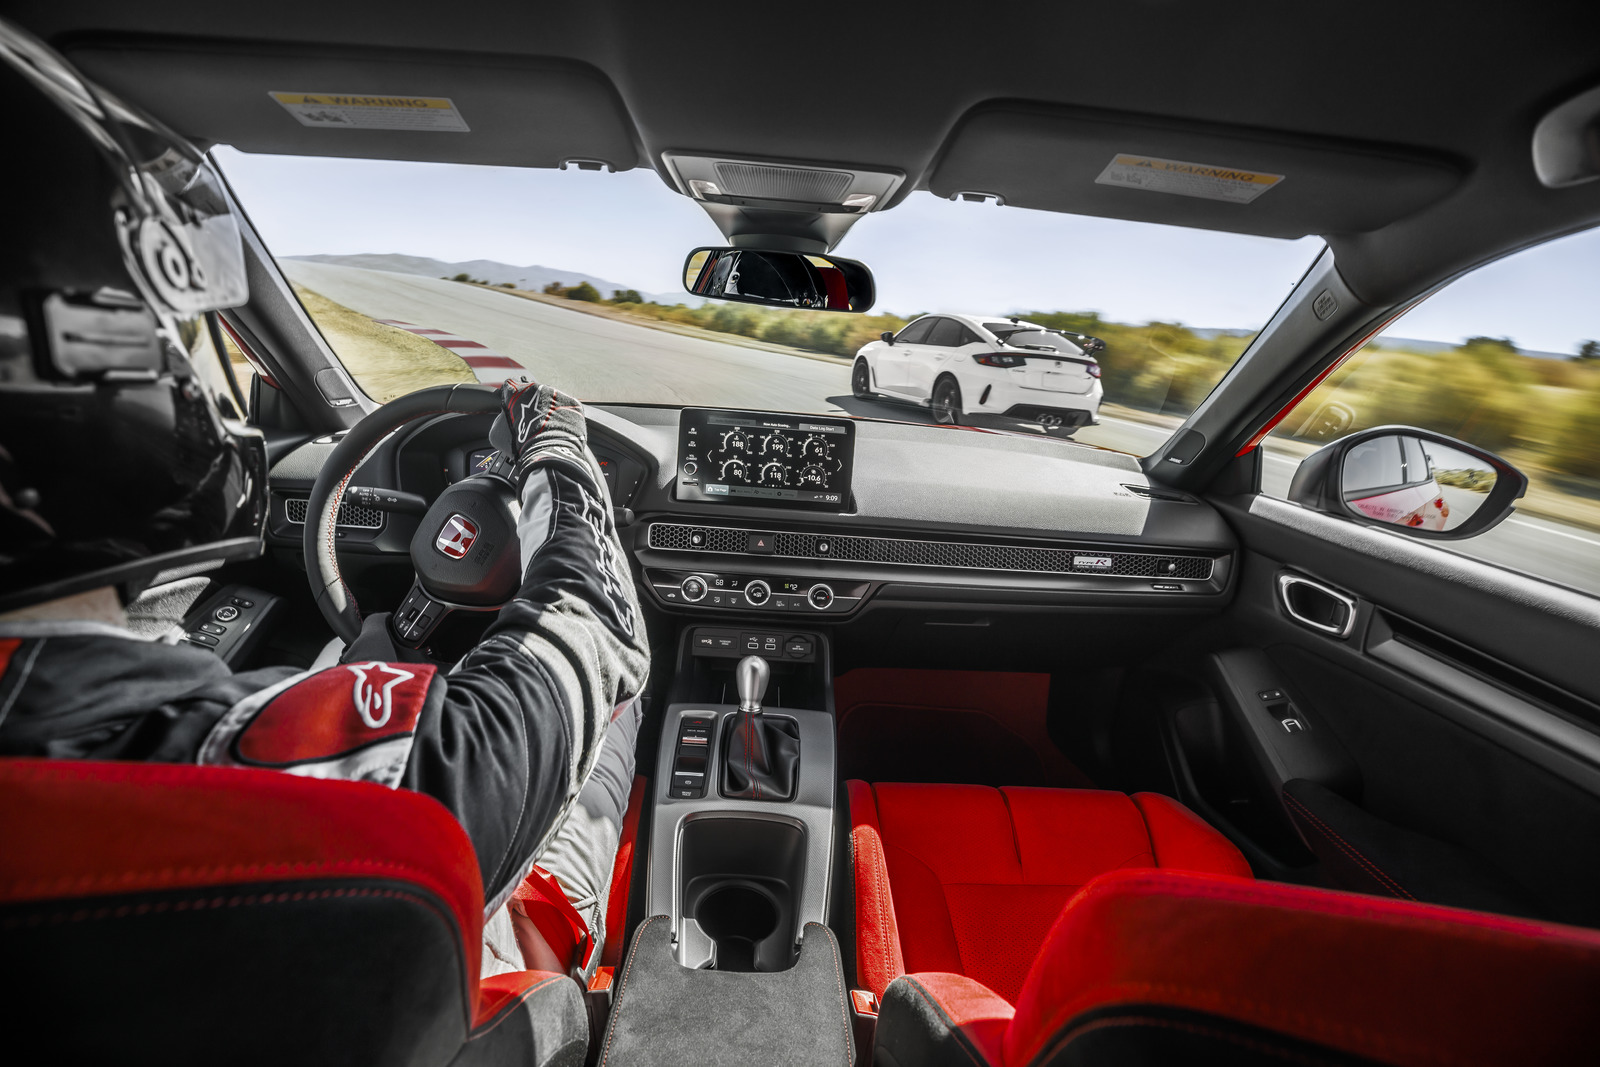 Honda Civic Type R đem lại cảm giác đặc biệt phấn khích khi cầm lái